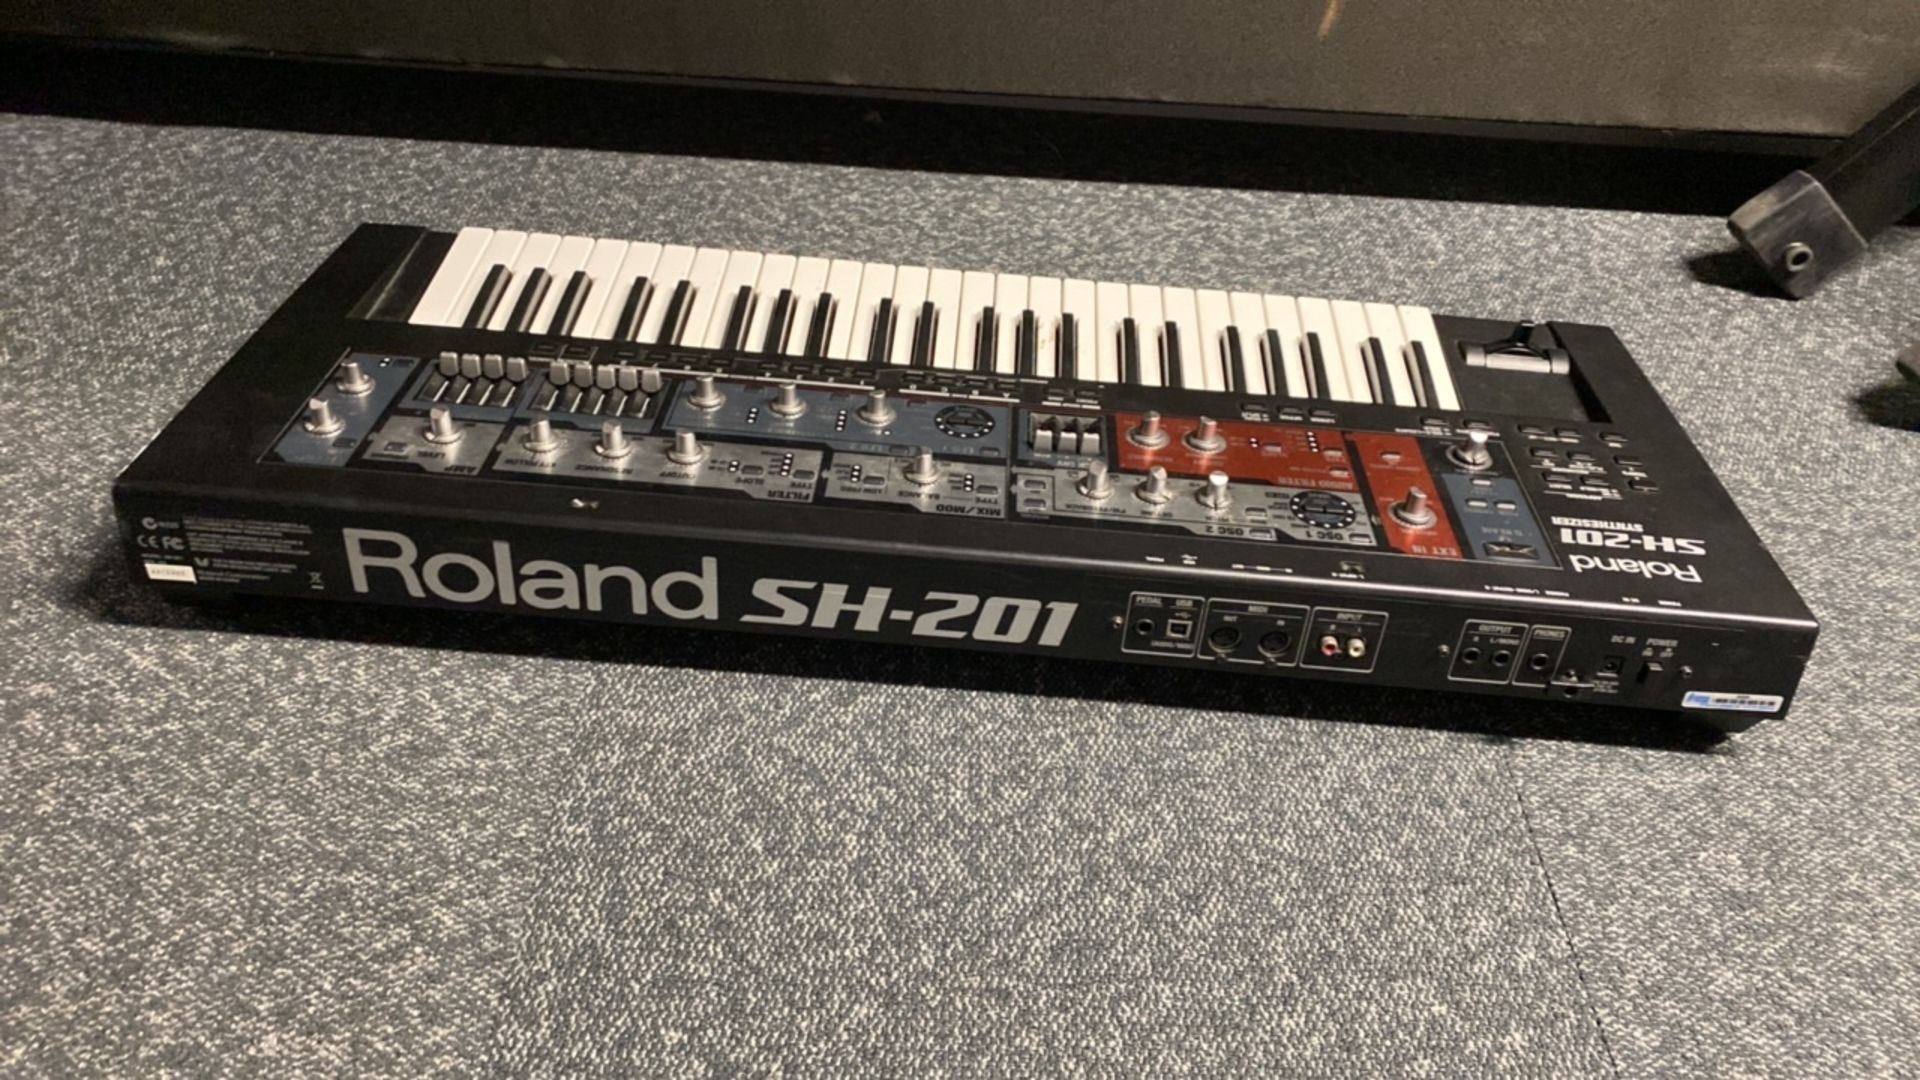 Roland SH-201 Synthesizer - Image 3 of 4